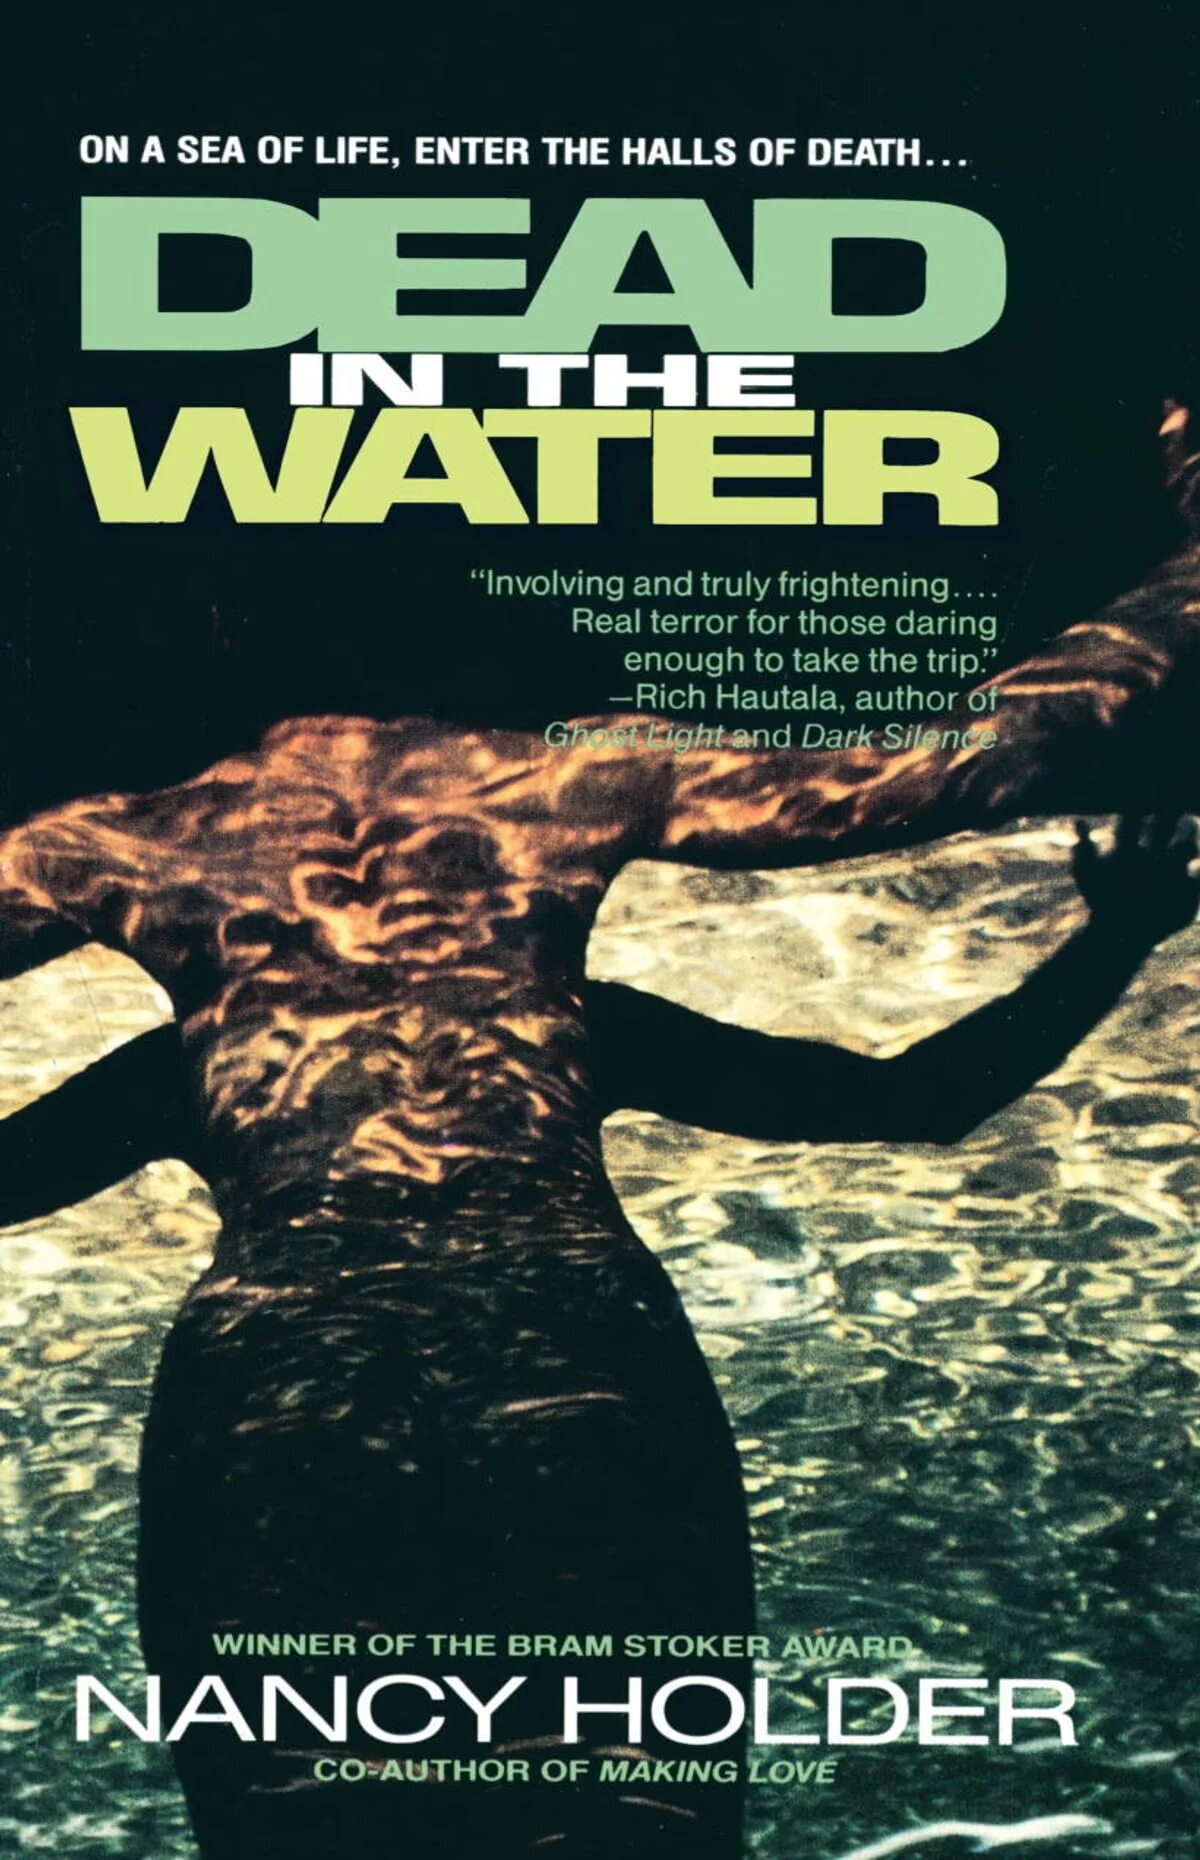 Enter life. Dead in the Water книга. On Fire книга Nancy Holder.